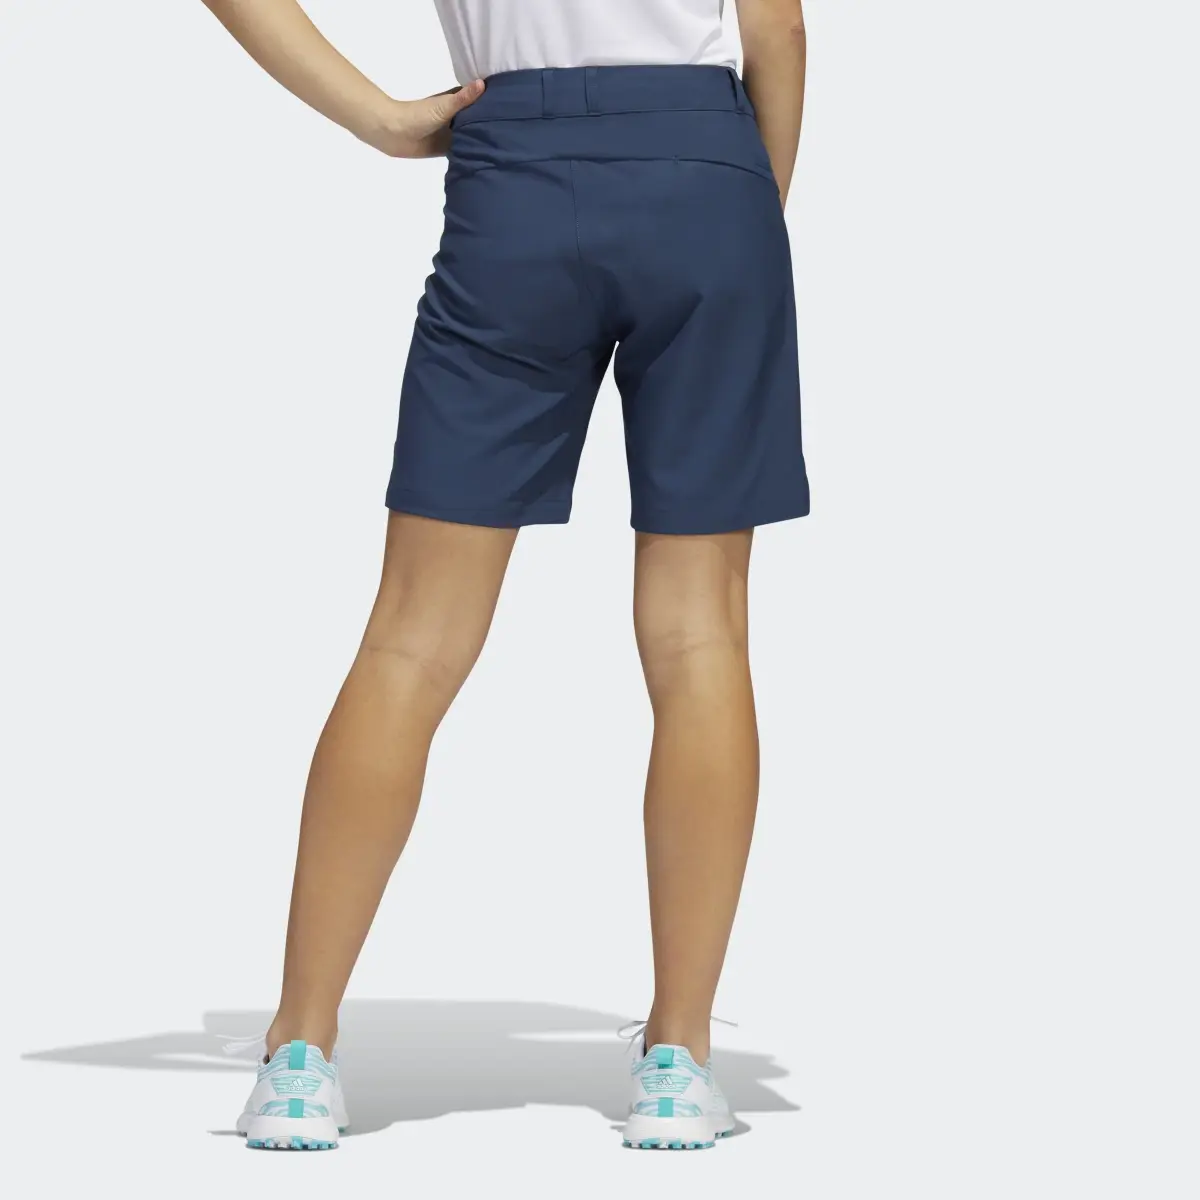 Adidas 7-Inch Shorts. 2